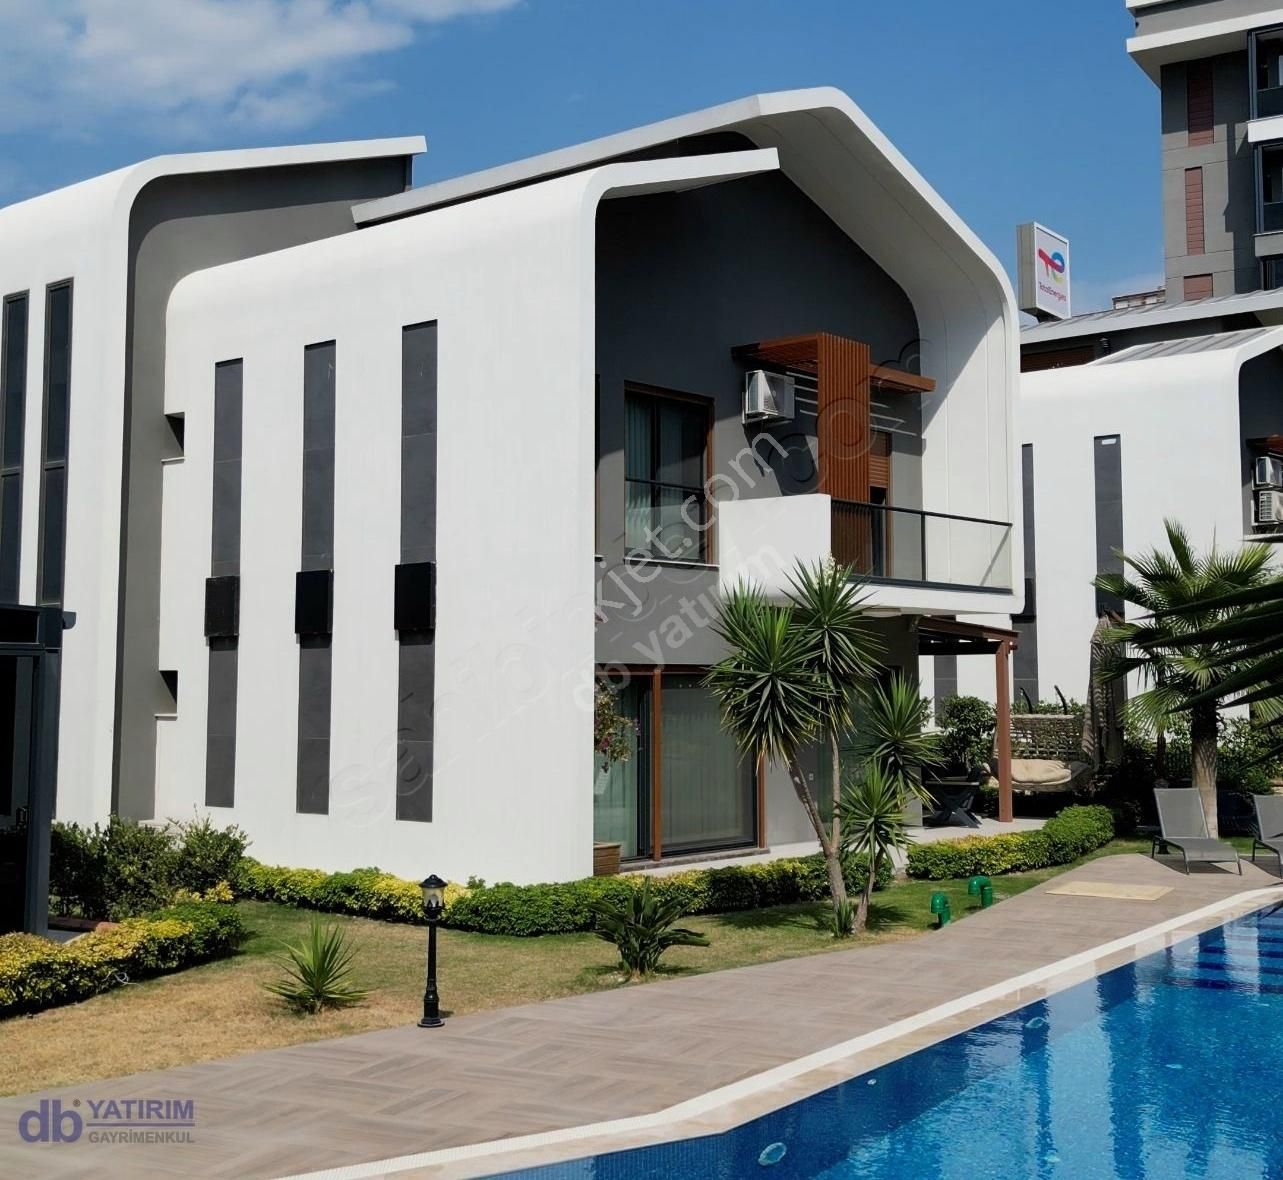 Güzelbahçe Yelki Satılık Villa Güzelbahçe Yelki' de Özel Tasarım Satılık Villa